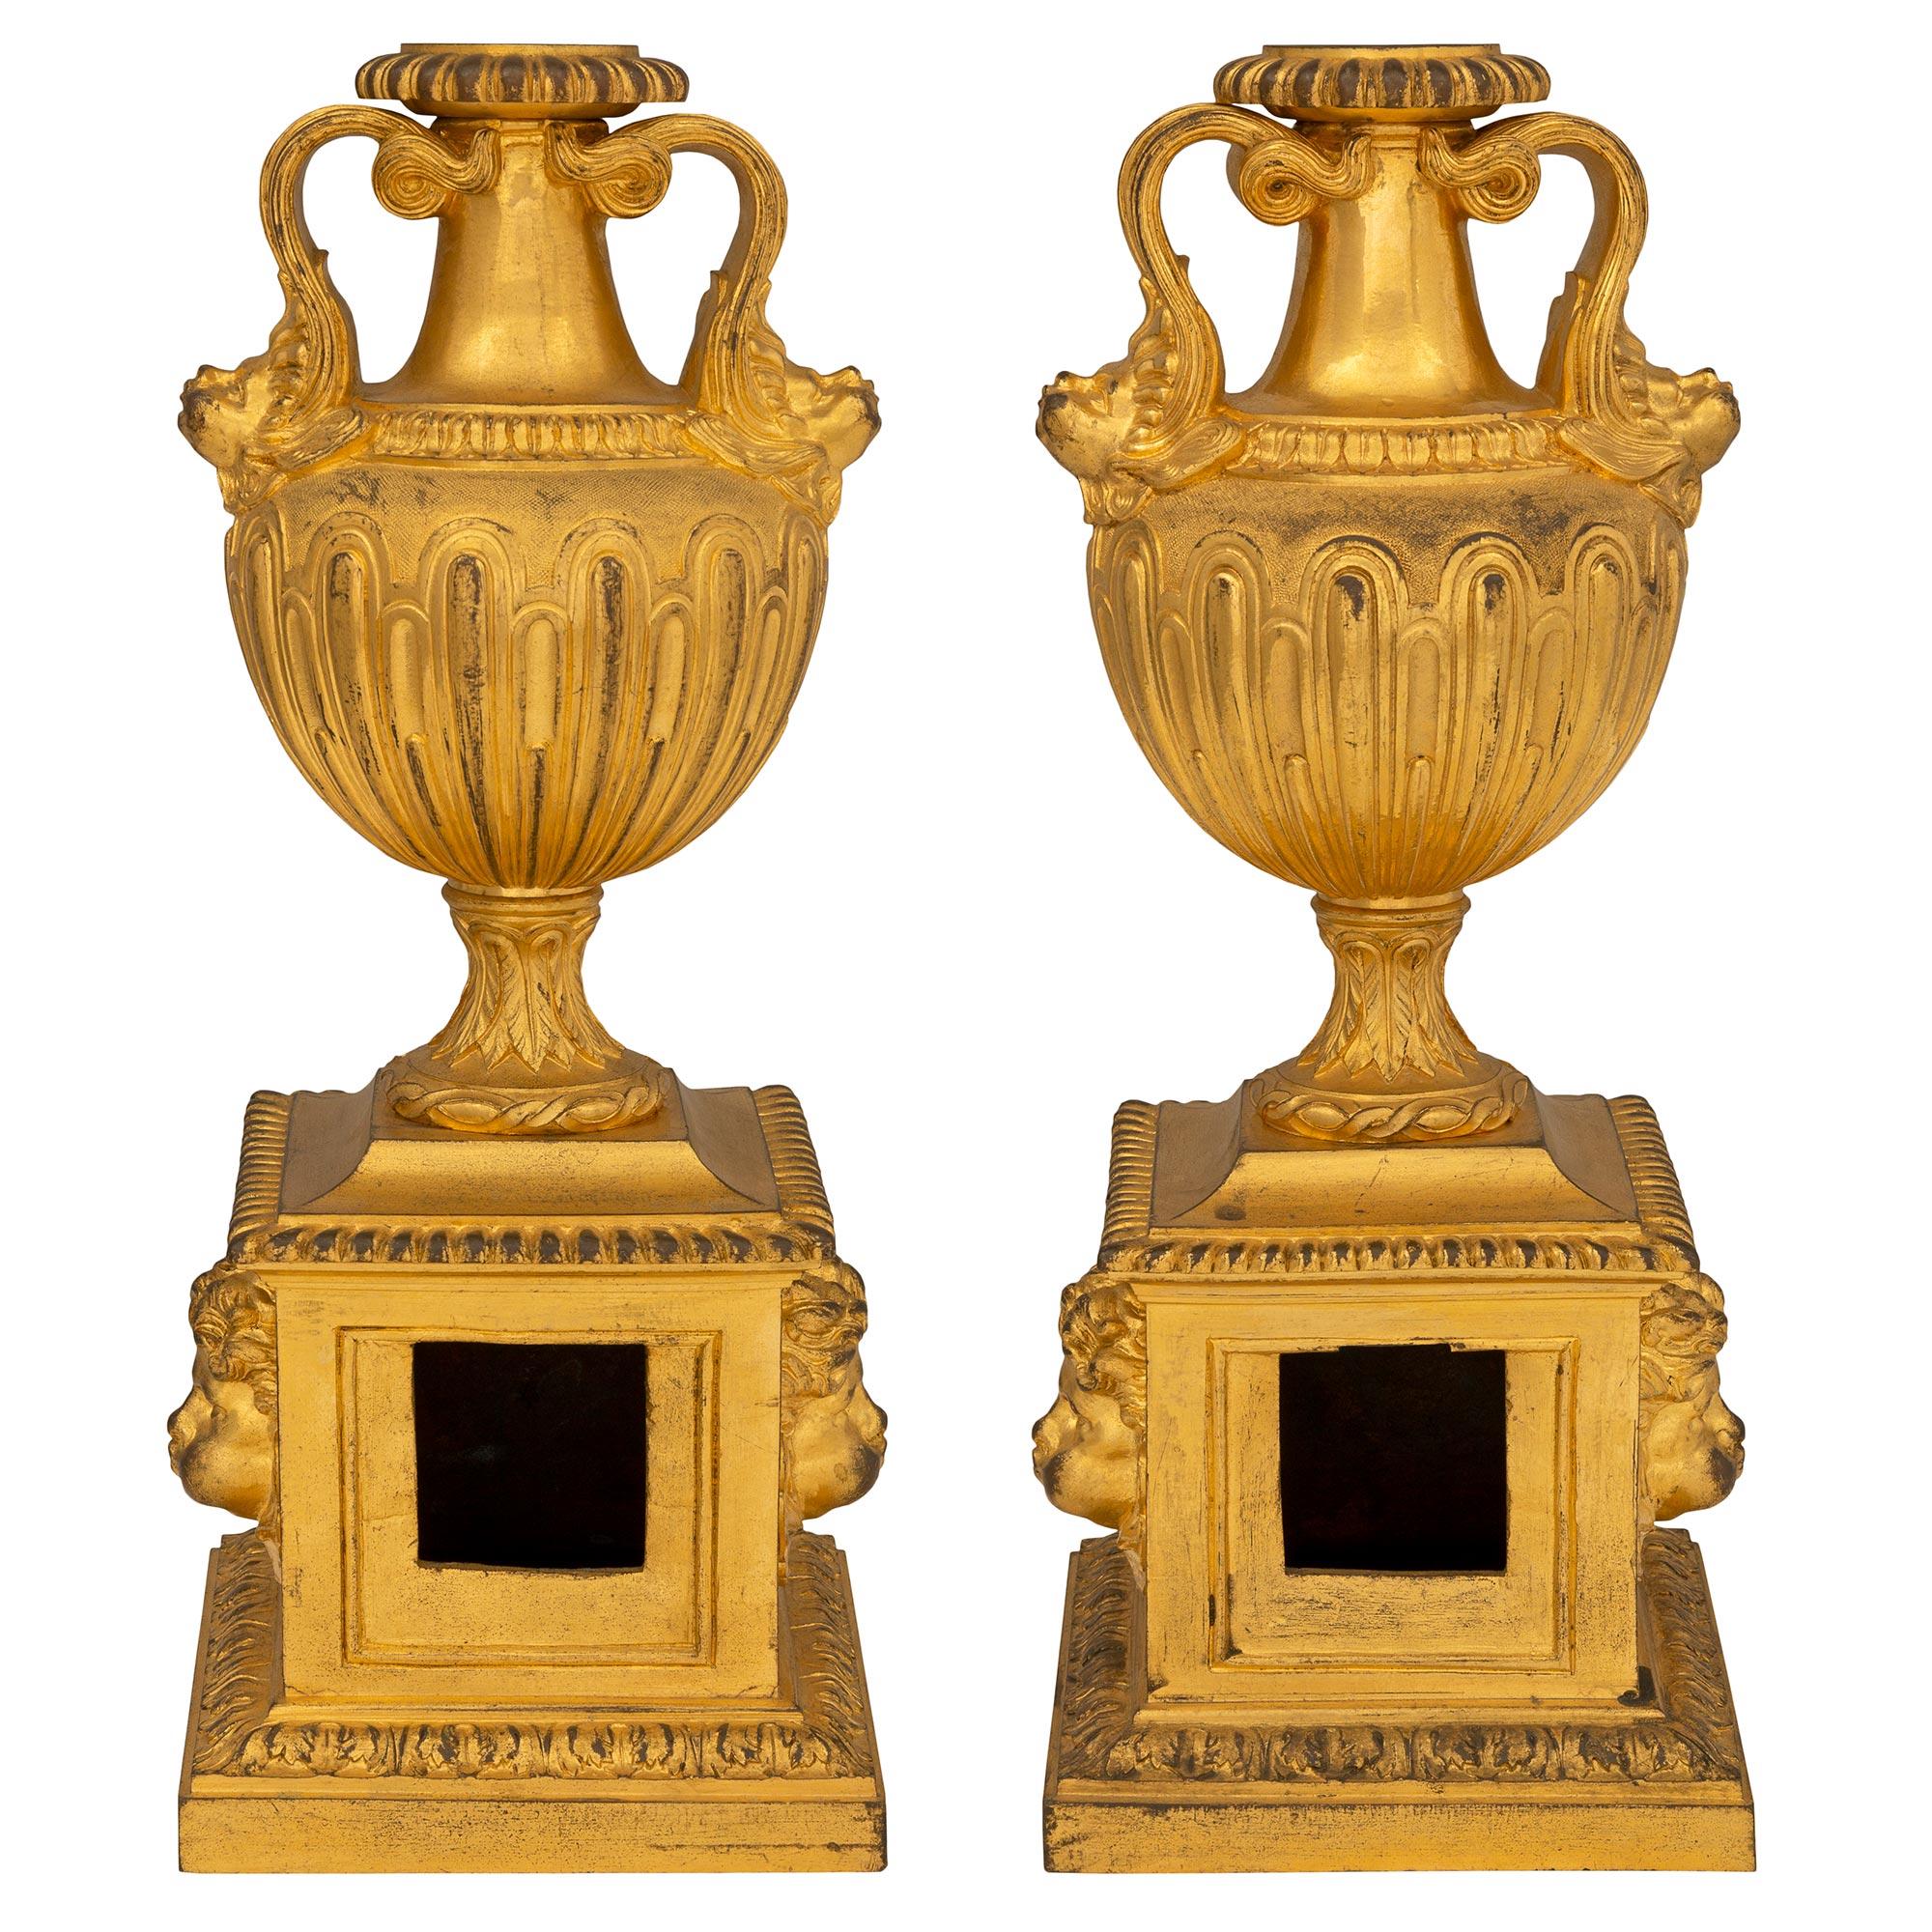 Une paire très élégante de Chenets/andrônes de cheminée en bronze doré d'époque Louis XVI du 18ème siècle. Chaque Chenet est surélevé par une base carrée avec une bordure enveloppante de feuilles d'acanthe. Au centre, trois charmants visages